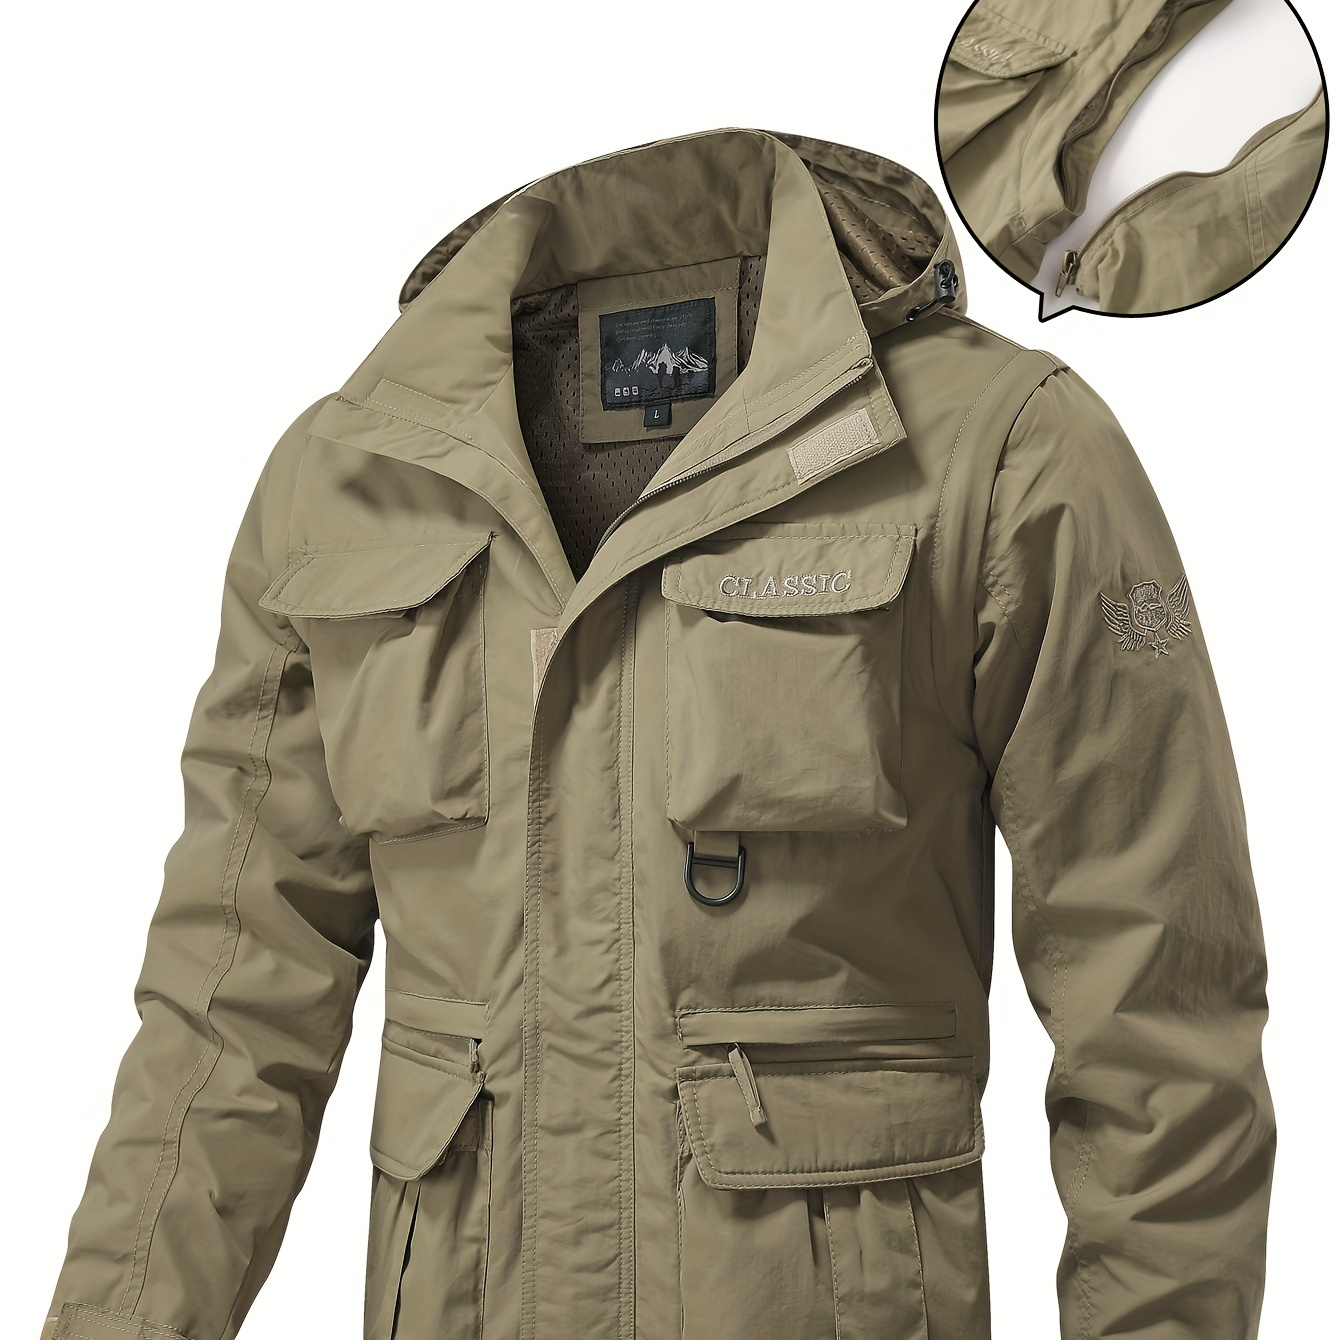 Detachable Windbreaker Hooded Jacket, Men's Casual Waterproof Multi Pocket  Cargo Jacket Vest For Outdoor Activities